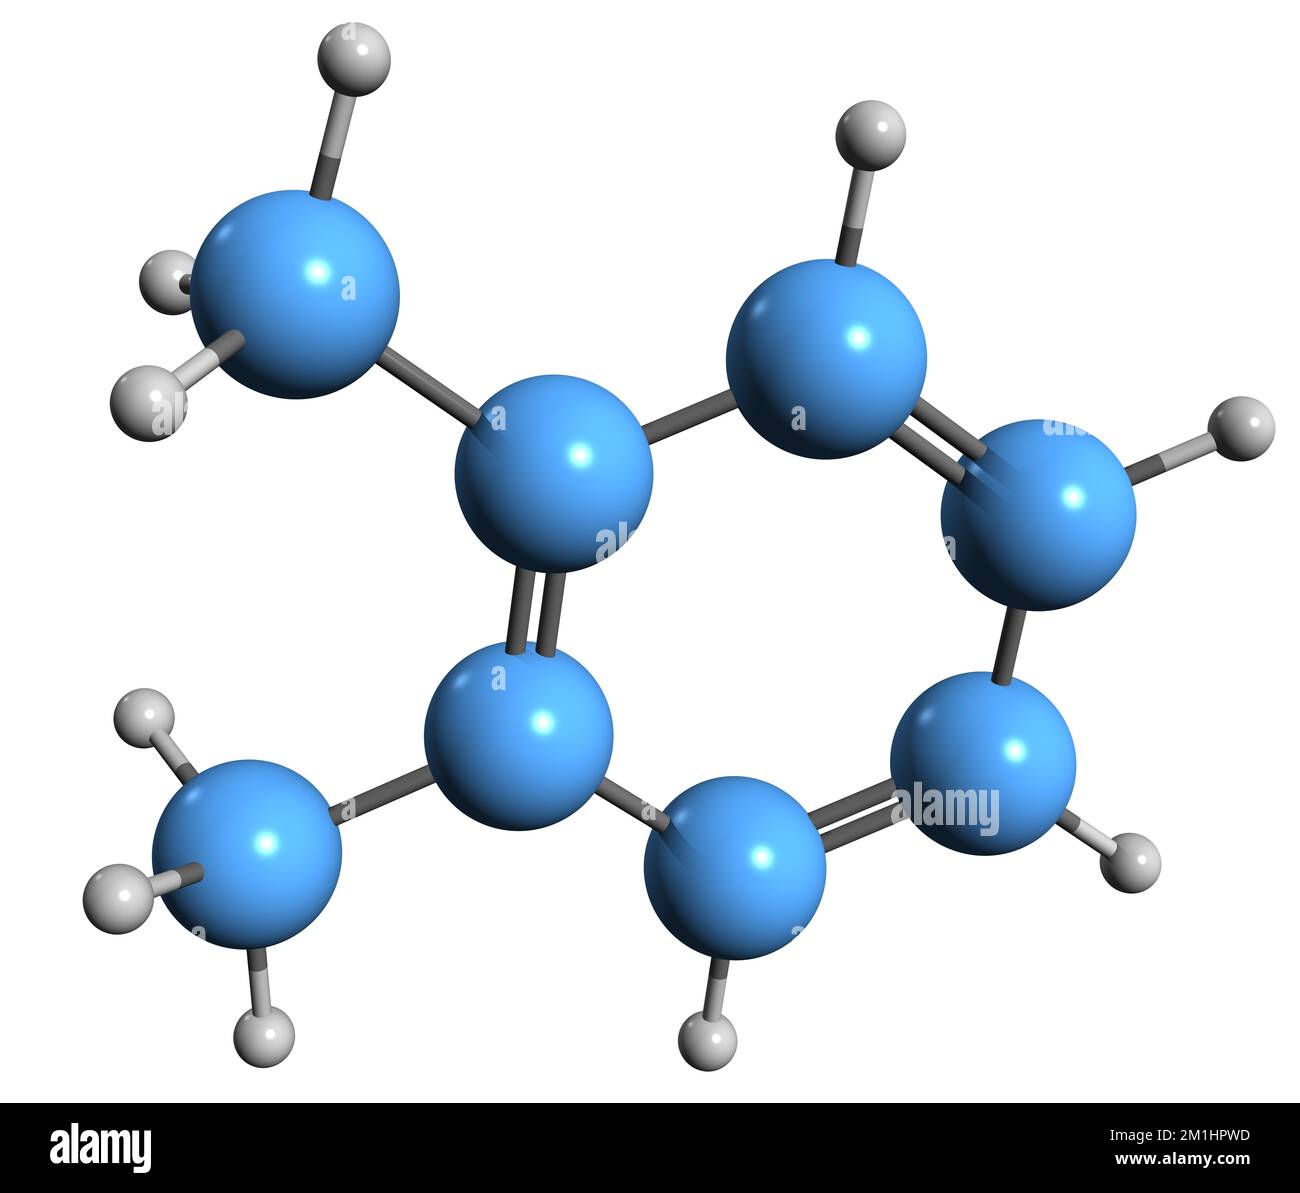 3D imagen de la fórmula esquelética de o-xileno - estructura química molecular de hidrocarburos aromáticos aislados sobre fondo blanco Foto de stock